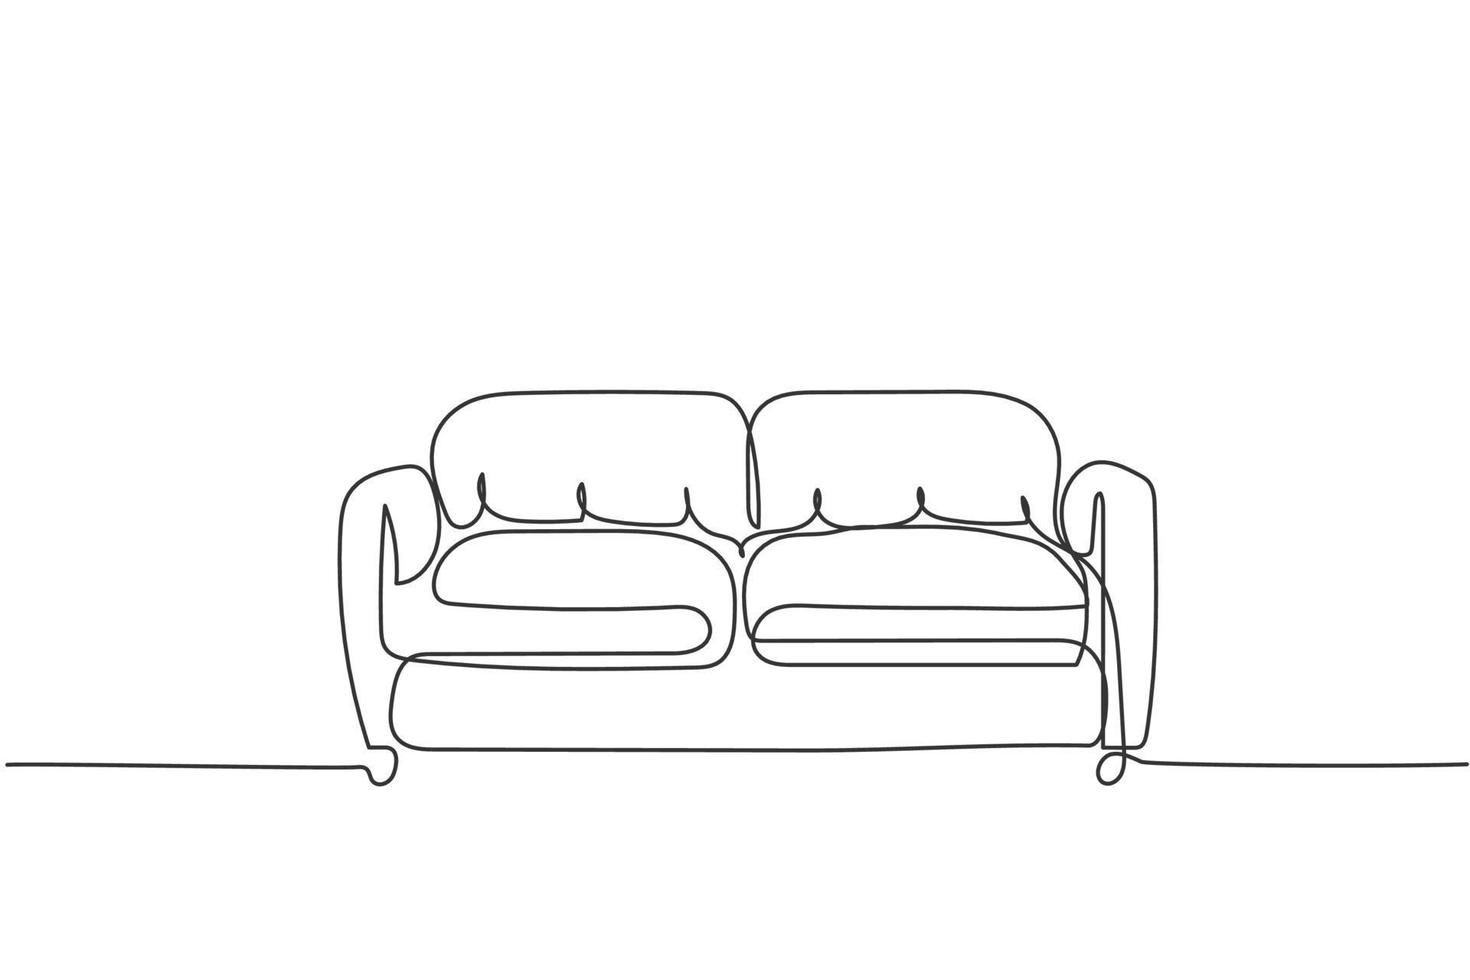 eine durchgehende linie zeichnung von luxus ledersofa haushaltsgerät. bequeme Couch für Wohnzimmermöbel-Haushaltsvorlagenkonzept. trendige Single-Line-Draw-Design-Vektorgrafik-Illustration vektor